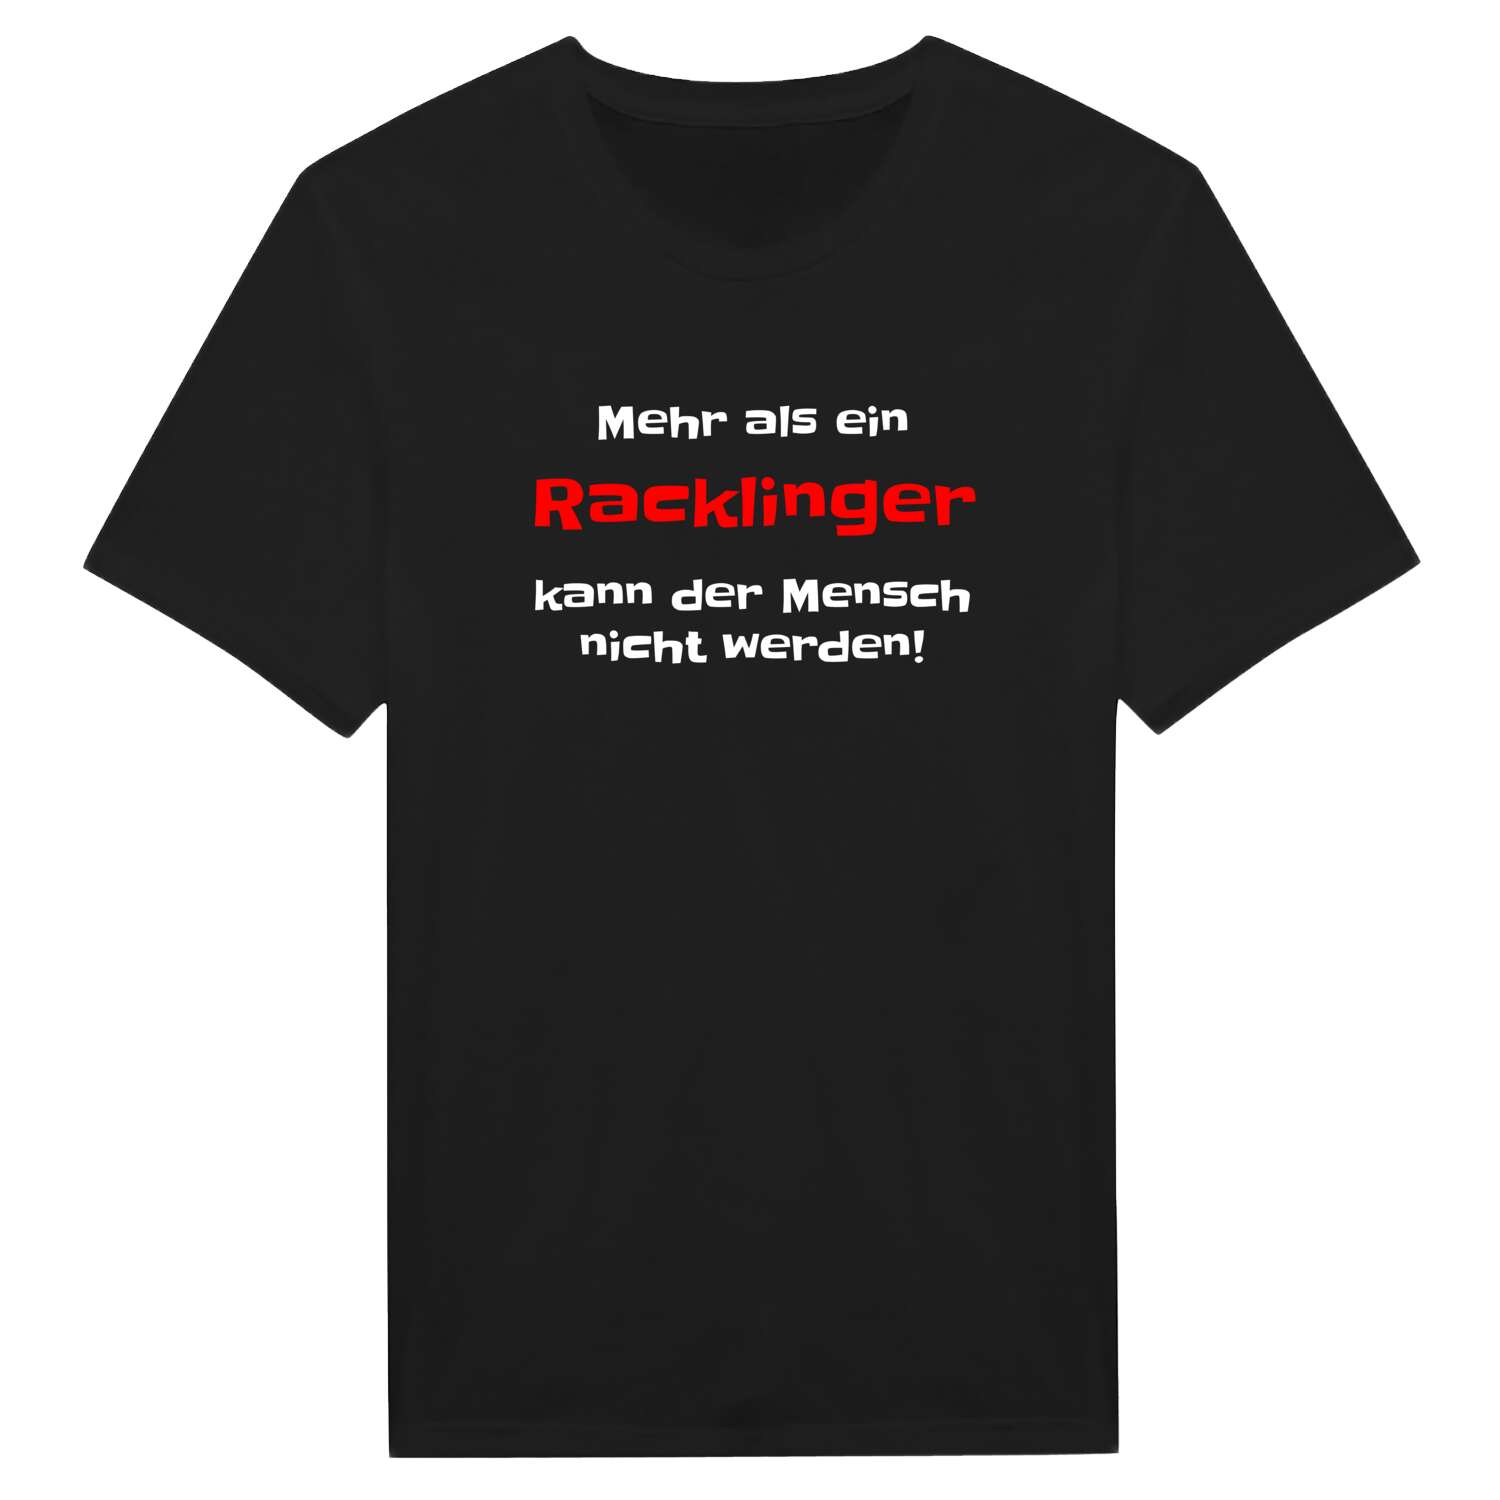 Rackling T-Shirt »Mehr als ein«